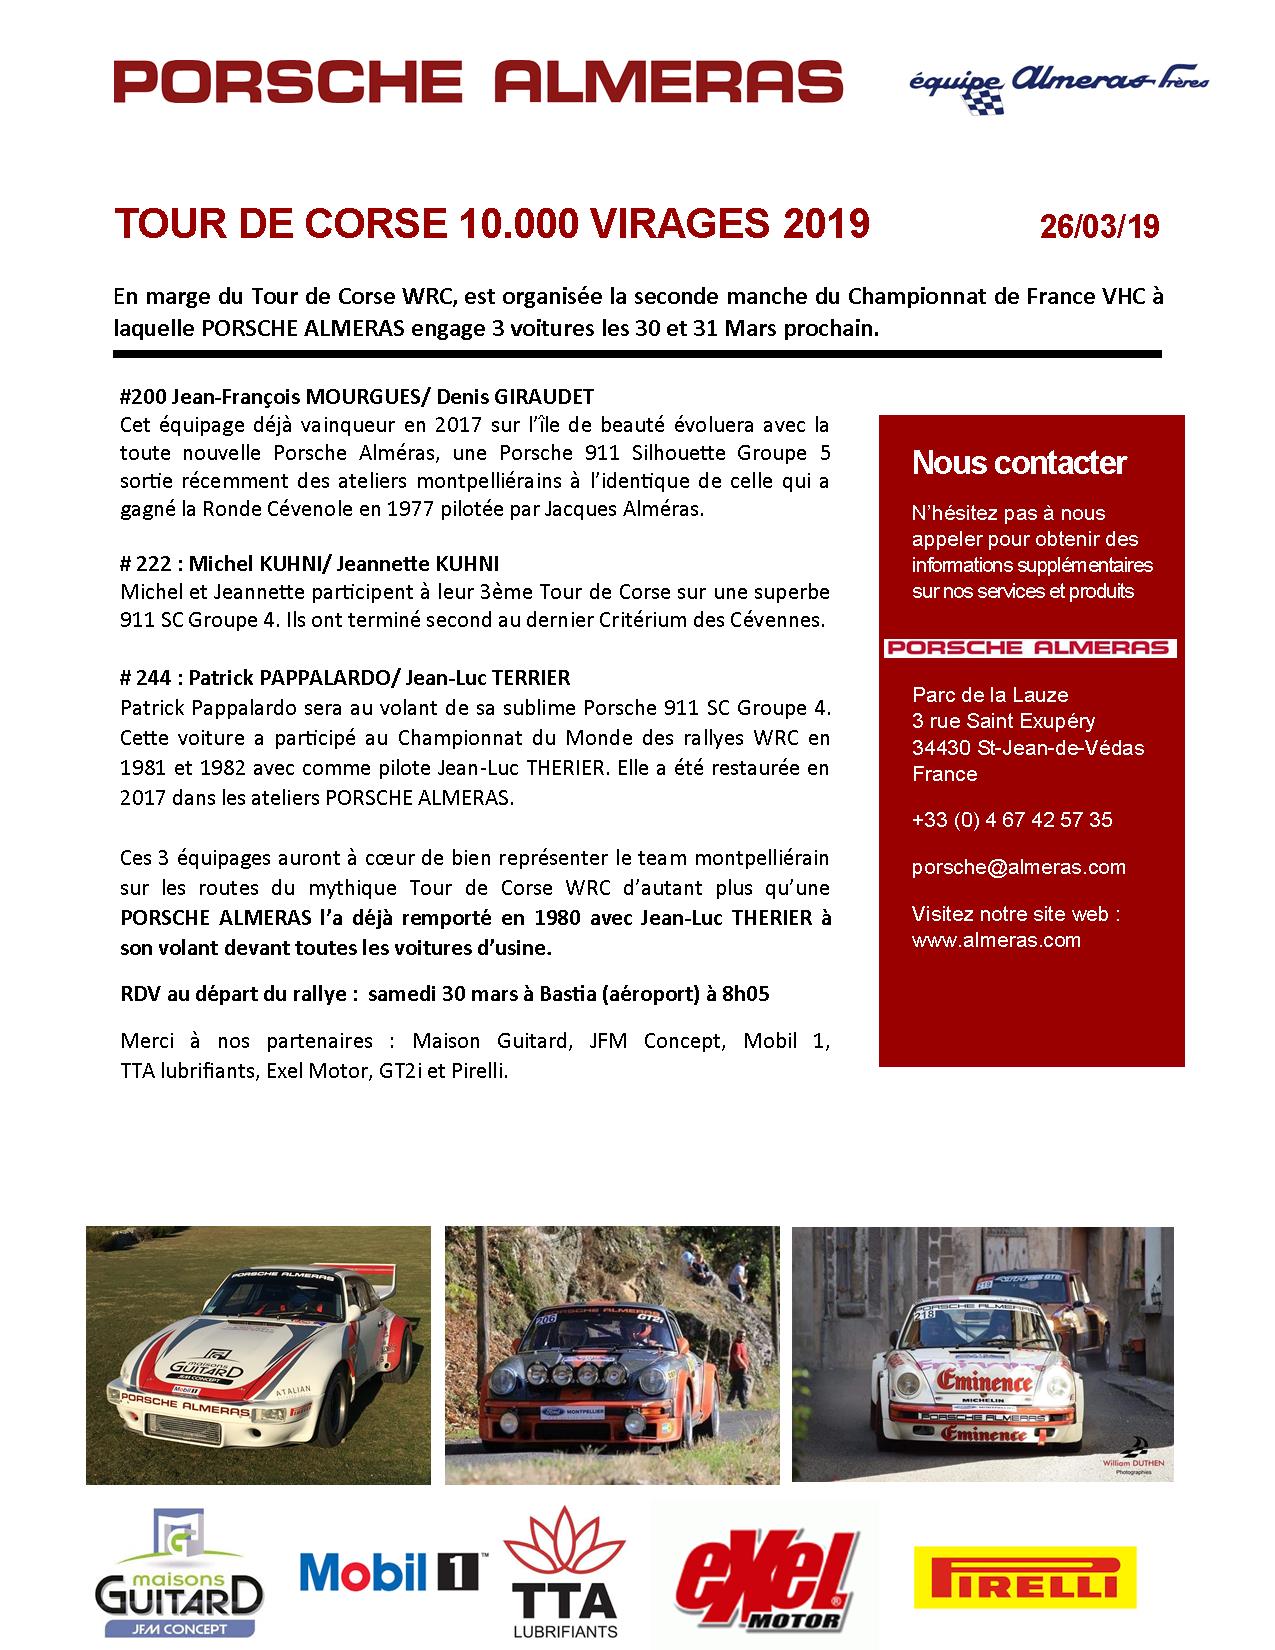 Tour de Corse 10.000 virages